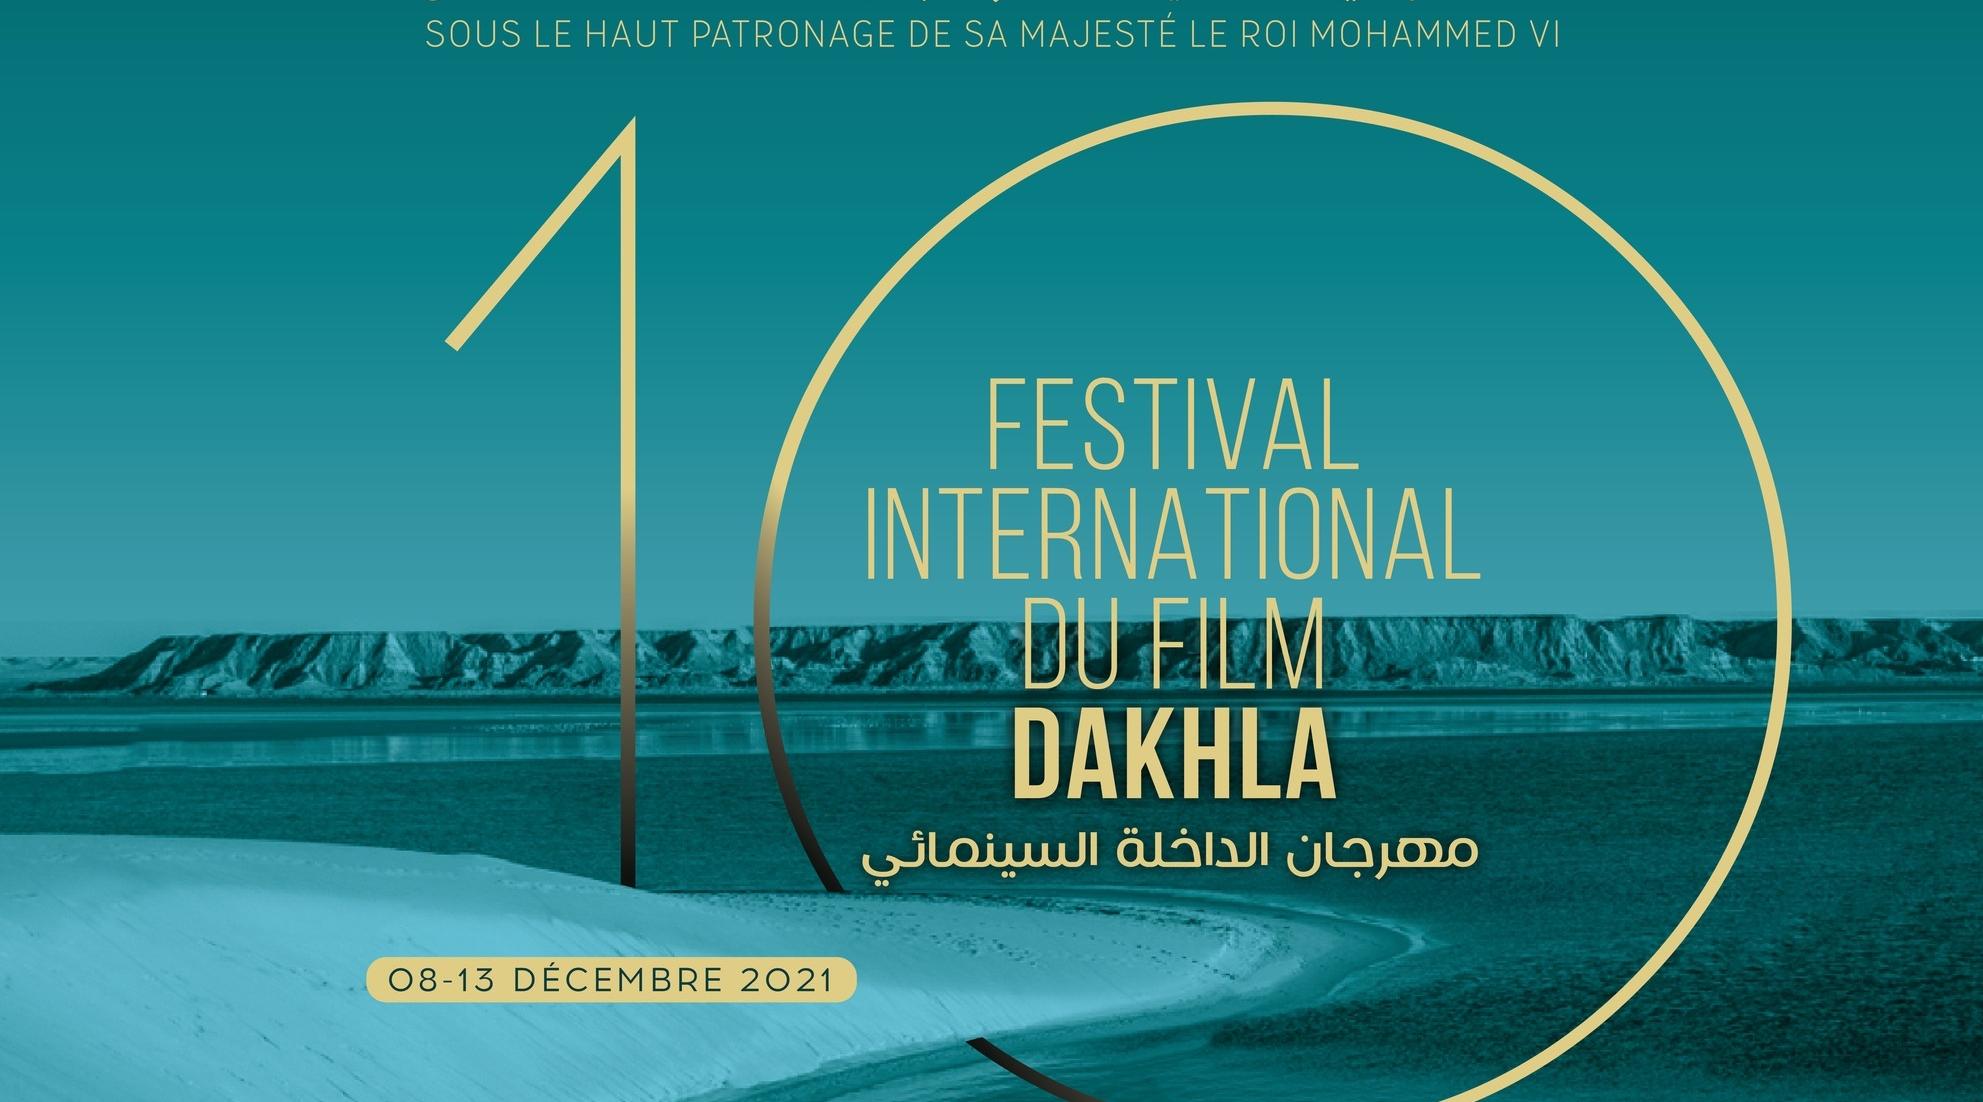 La 10ème édition du festival international du film de Dakhla du 08 au 12 décembre